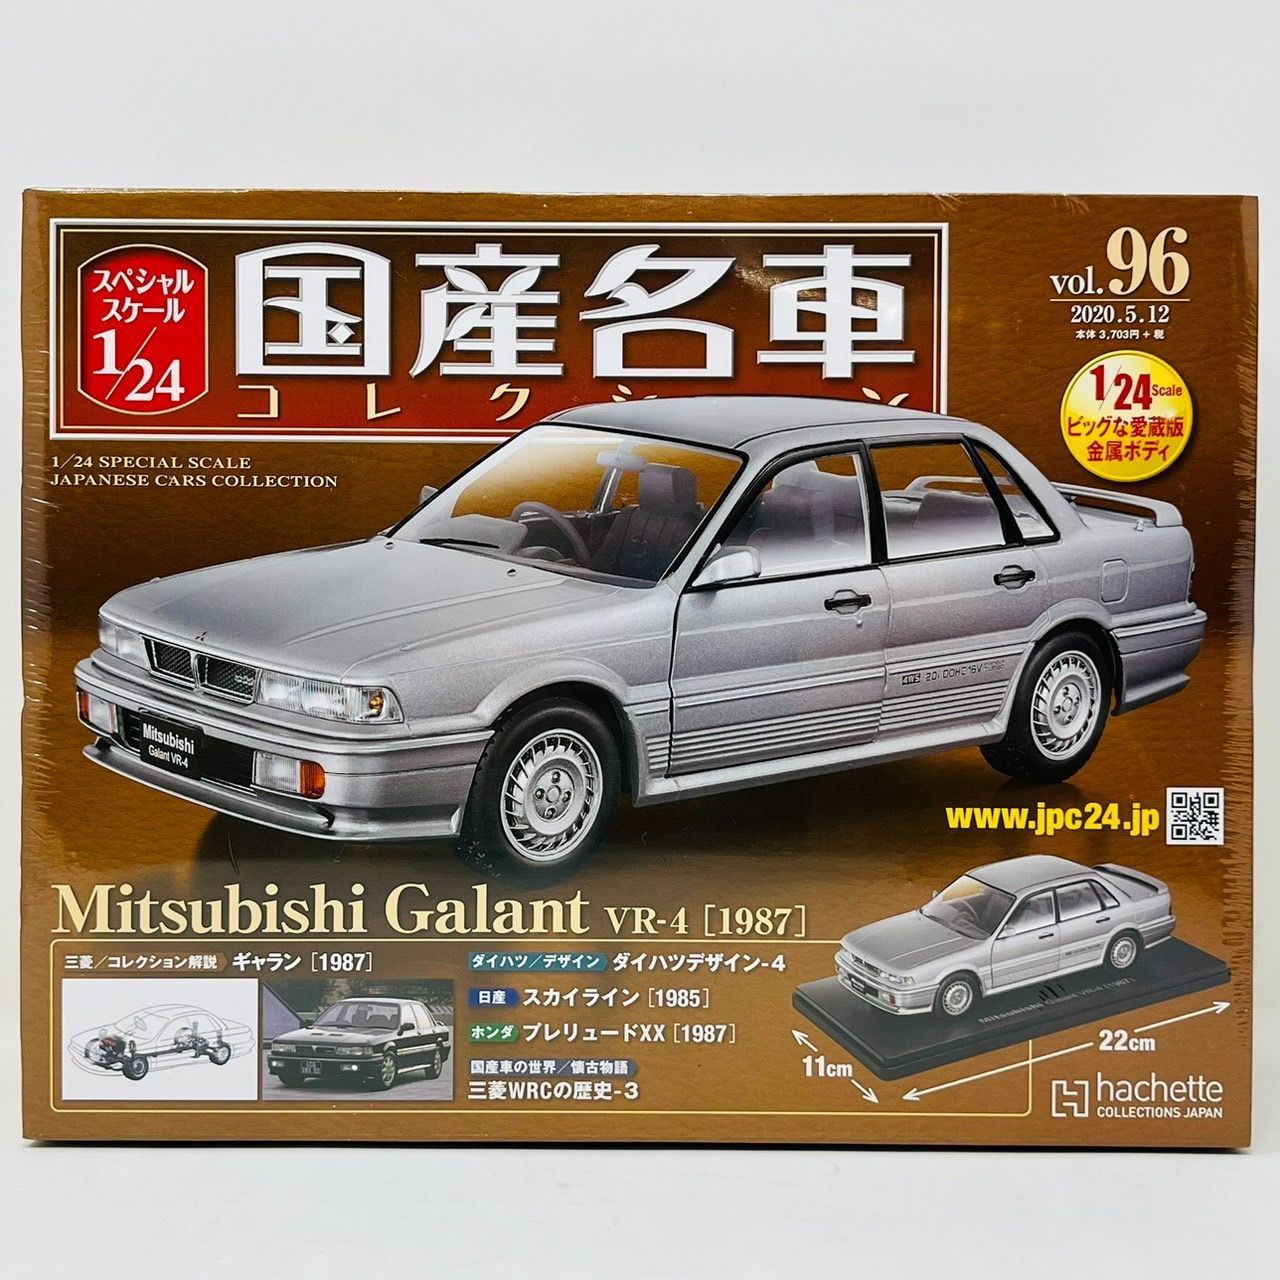 国産名車コレクション 1/24 No 96 ギャラン 1987 ミニカー